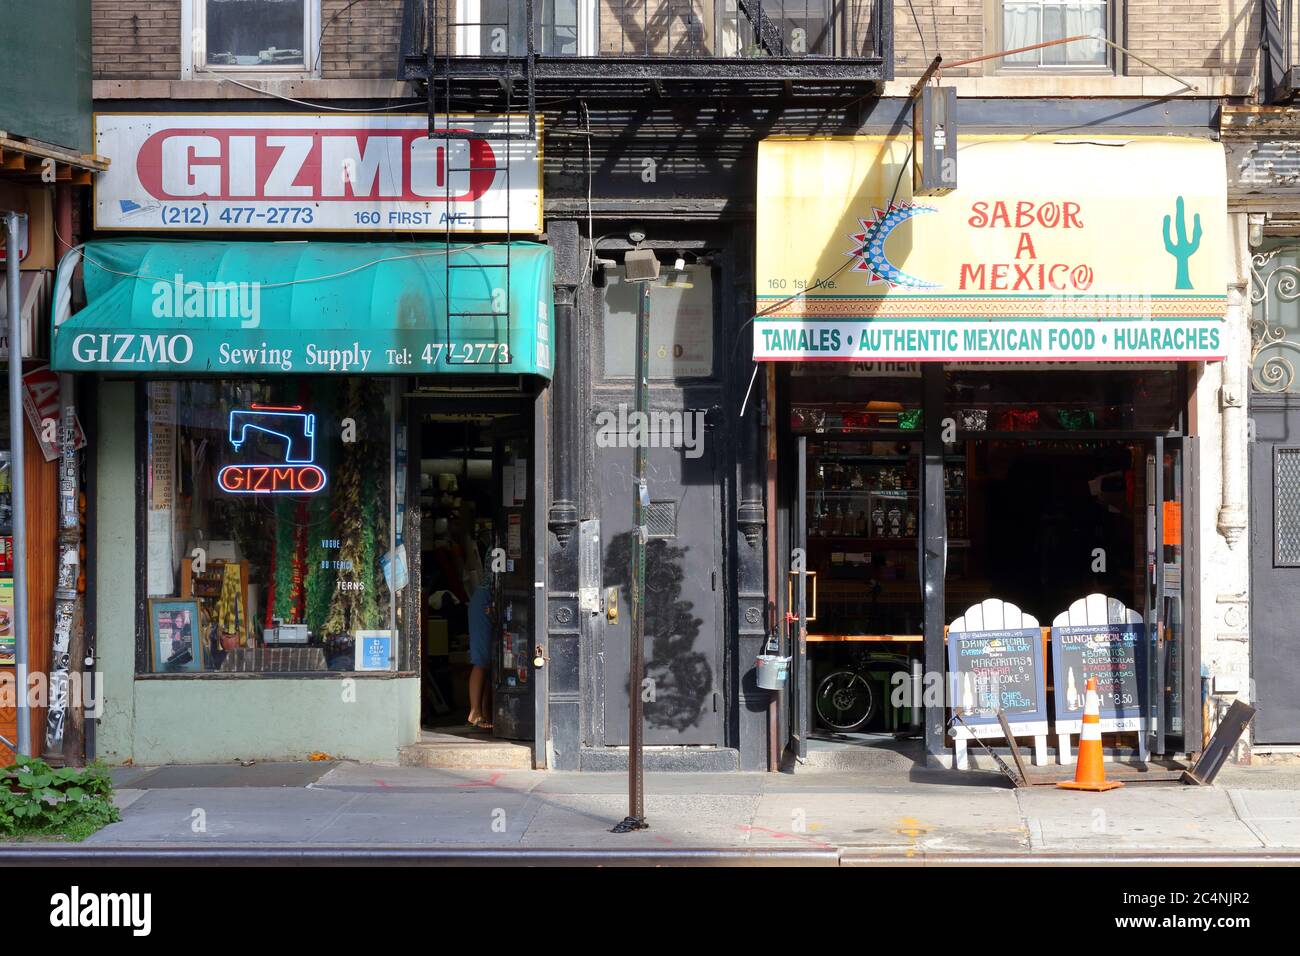 Gizmo, Sabor A Mexico, 160 First Ave, New York, NYC Foto von einem Nähbedarf und einer Tacqueria in Manhattans East Village Nachbarschaft. Stockfoto